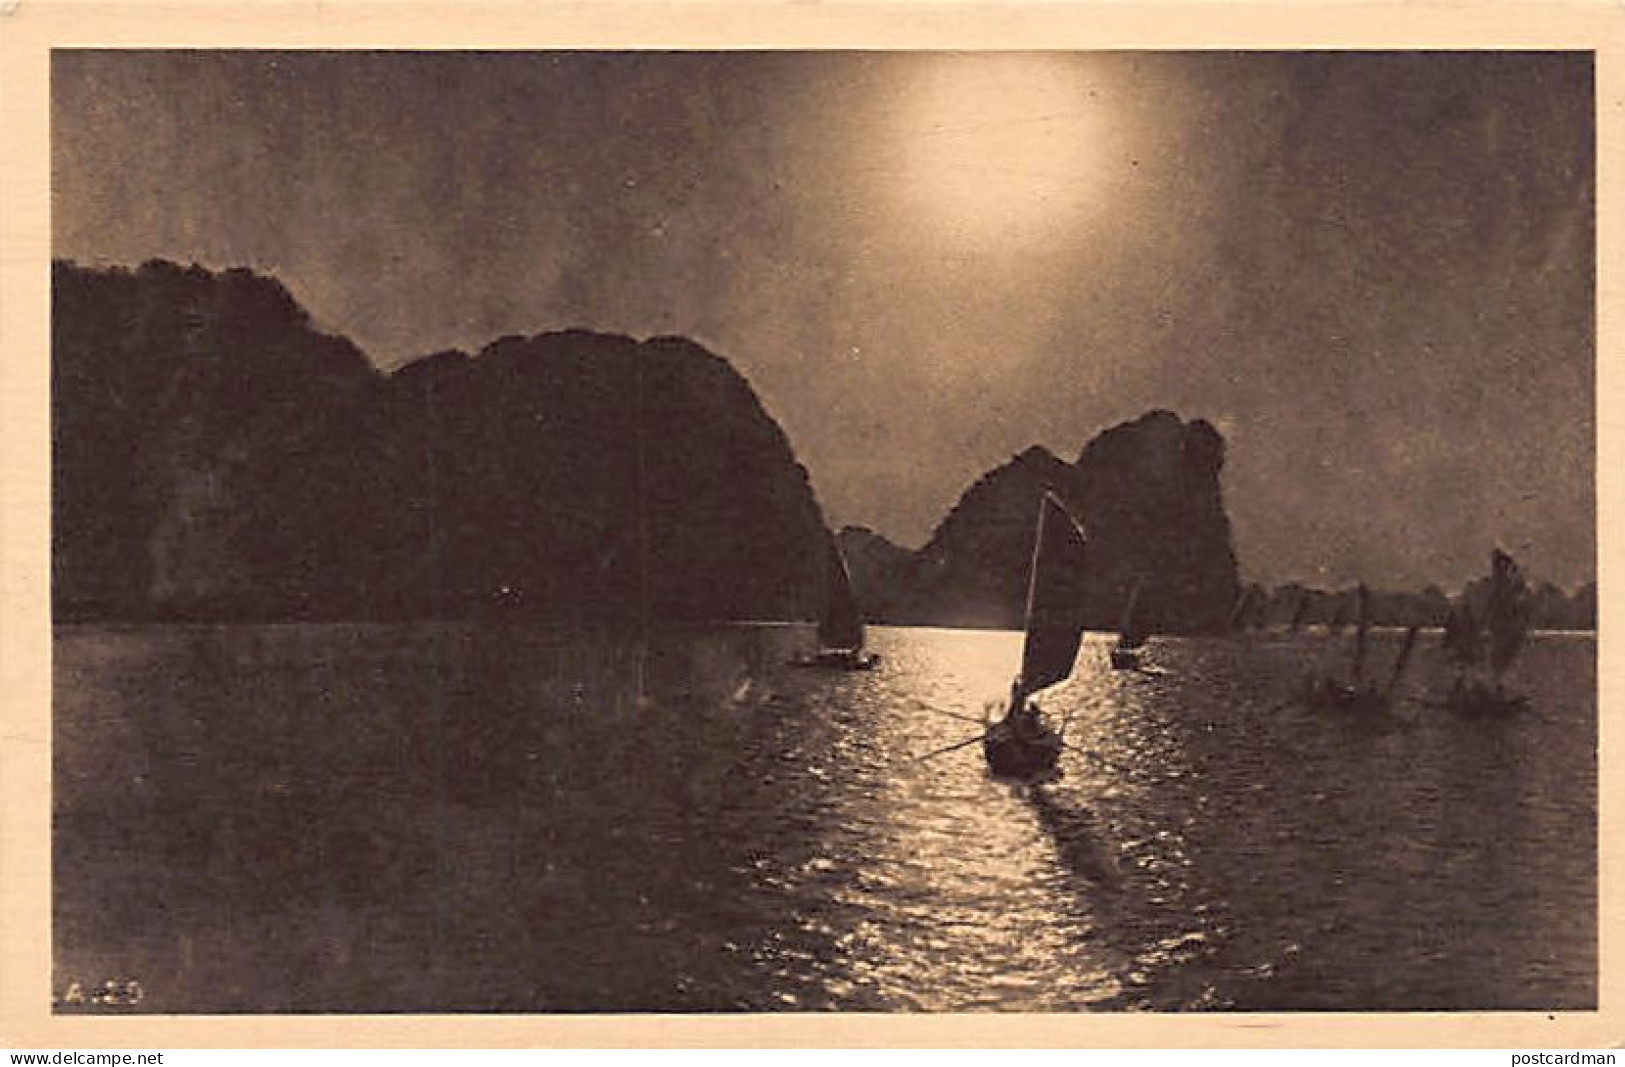 Vietnam - Baie D'Along HA LONG - La Nuit - Retour De Pêche - Ed. Indochine Films & Cinéma 29 - Viêt-Nam